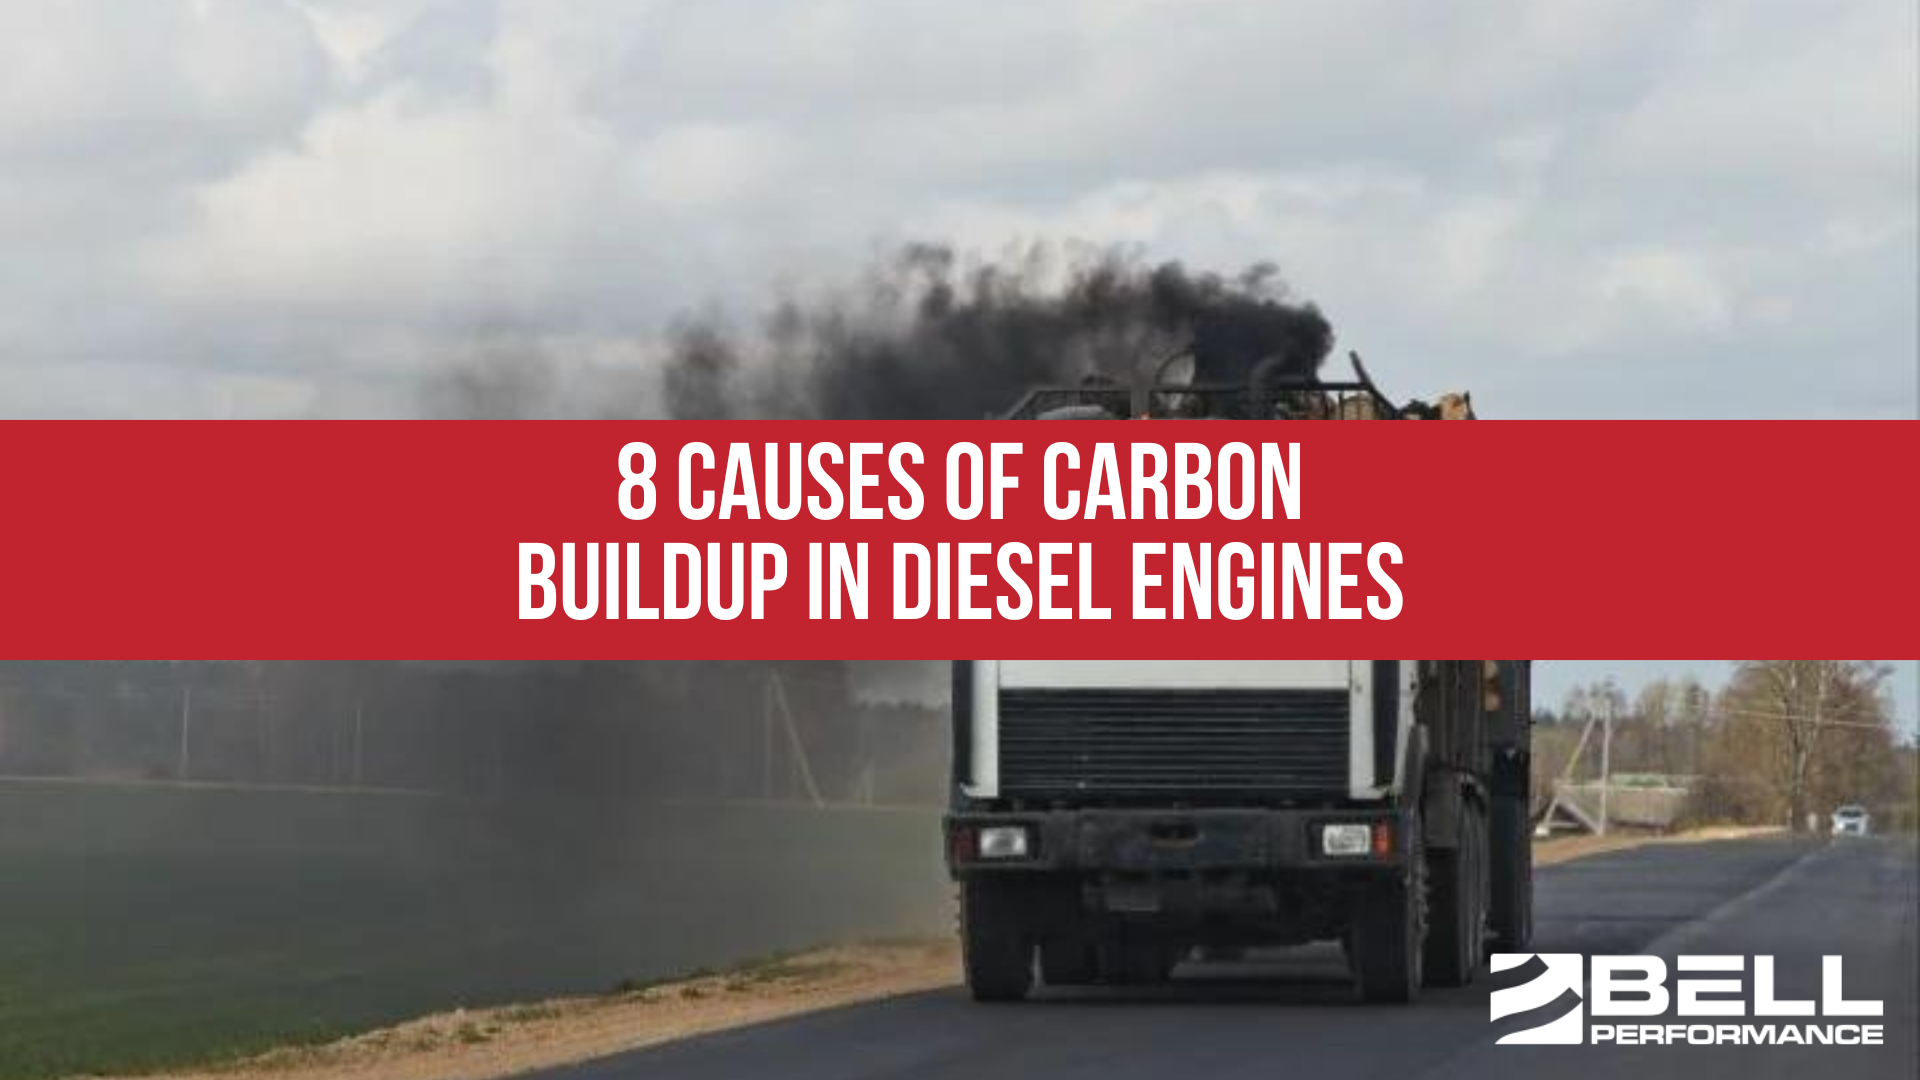 8 Causes of Carbon Buildup in Diesel Engines